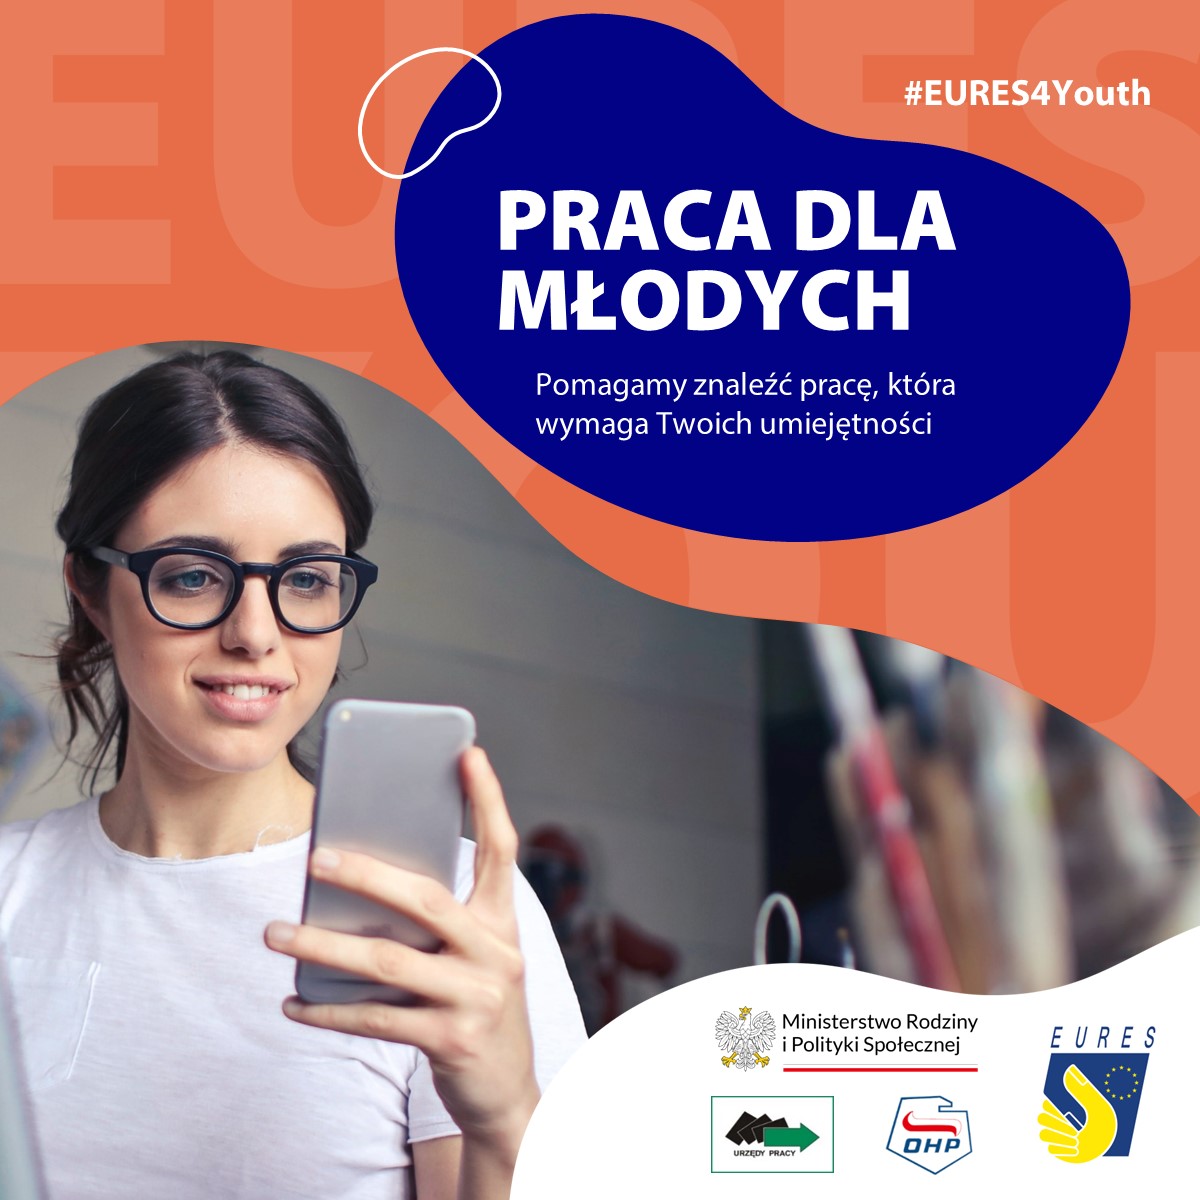 Praca dla młodych - możliwości w całej Europie.